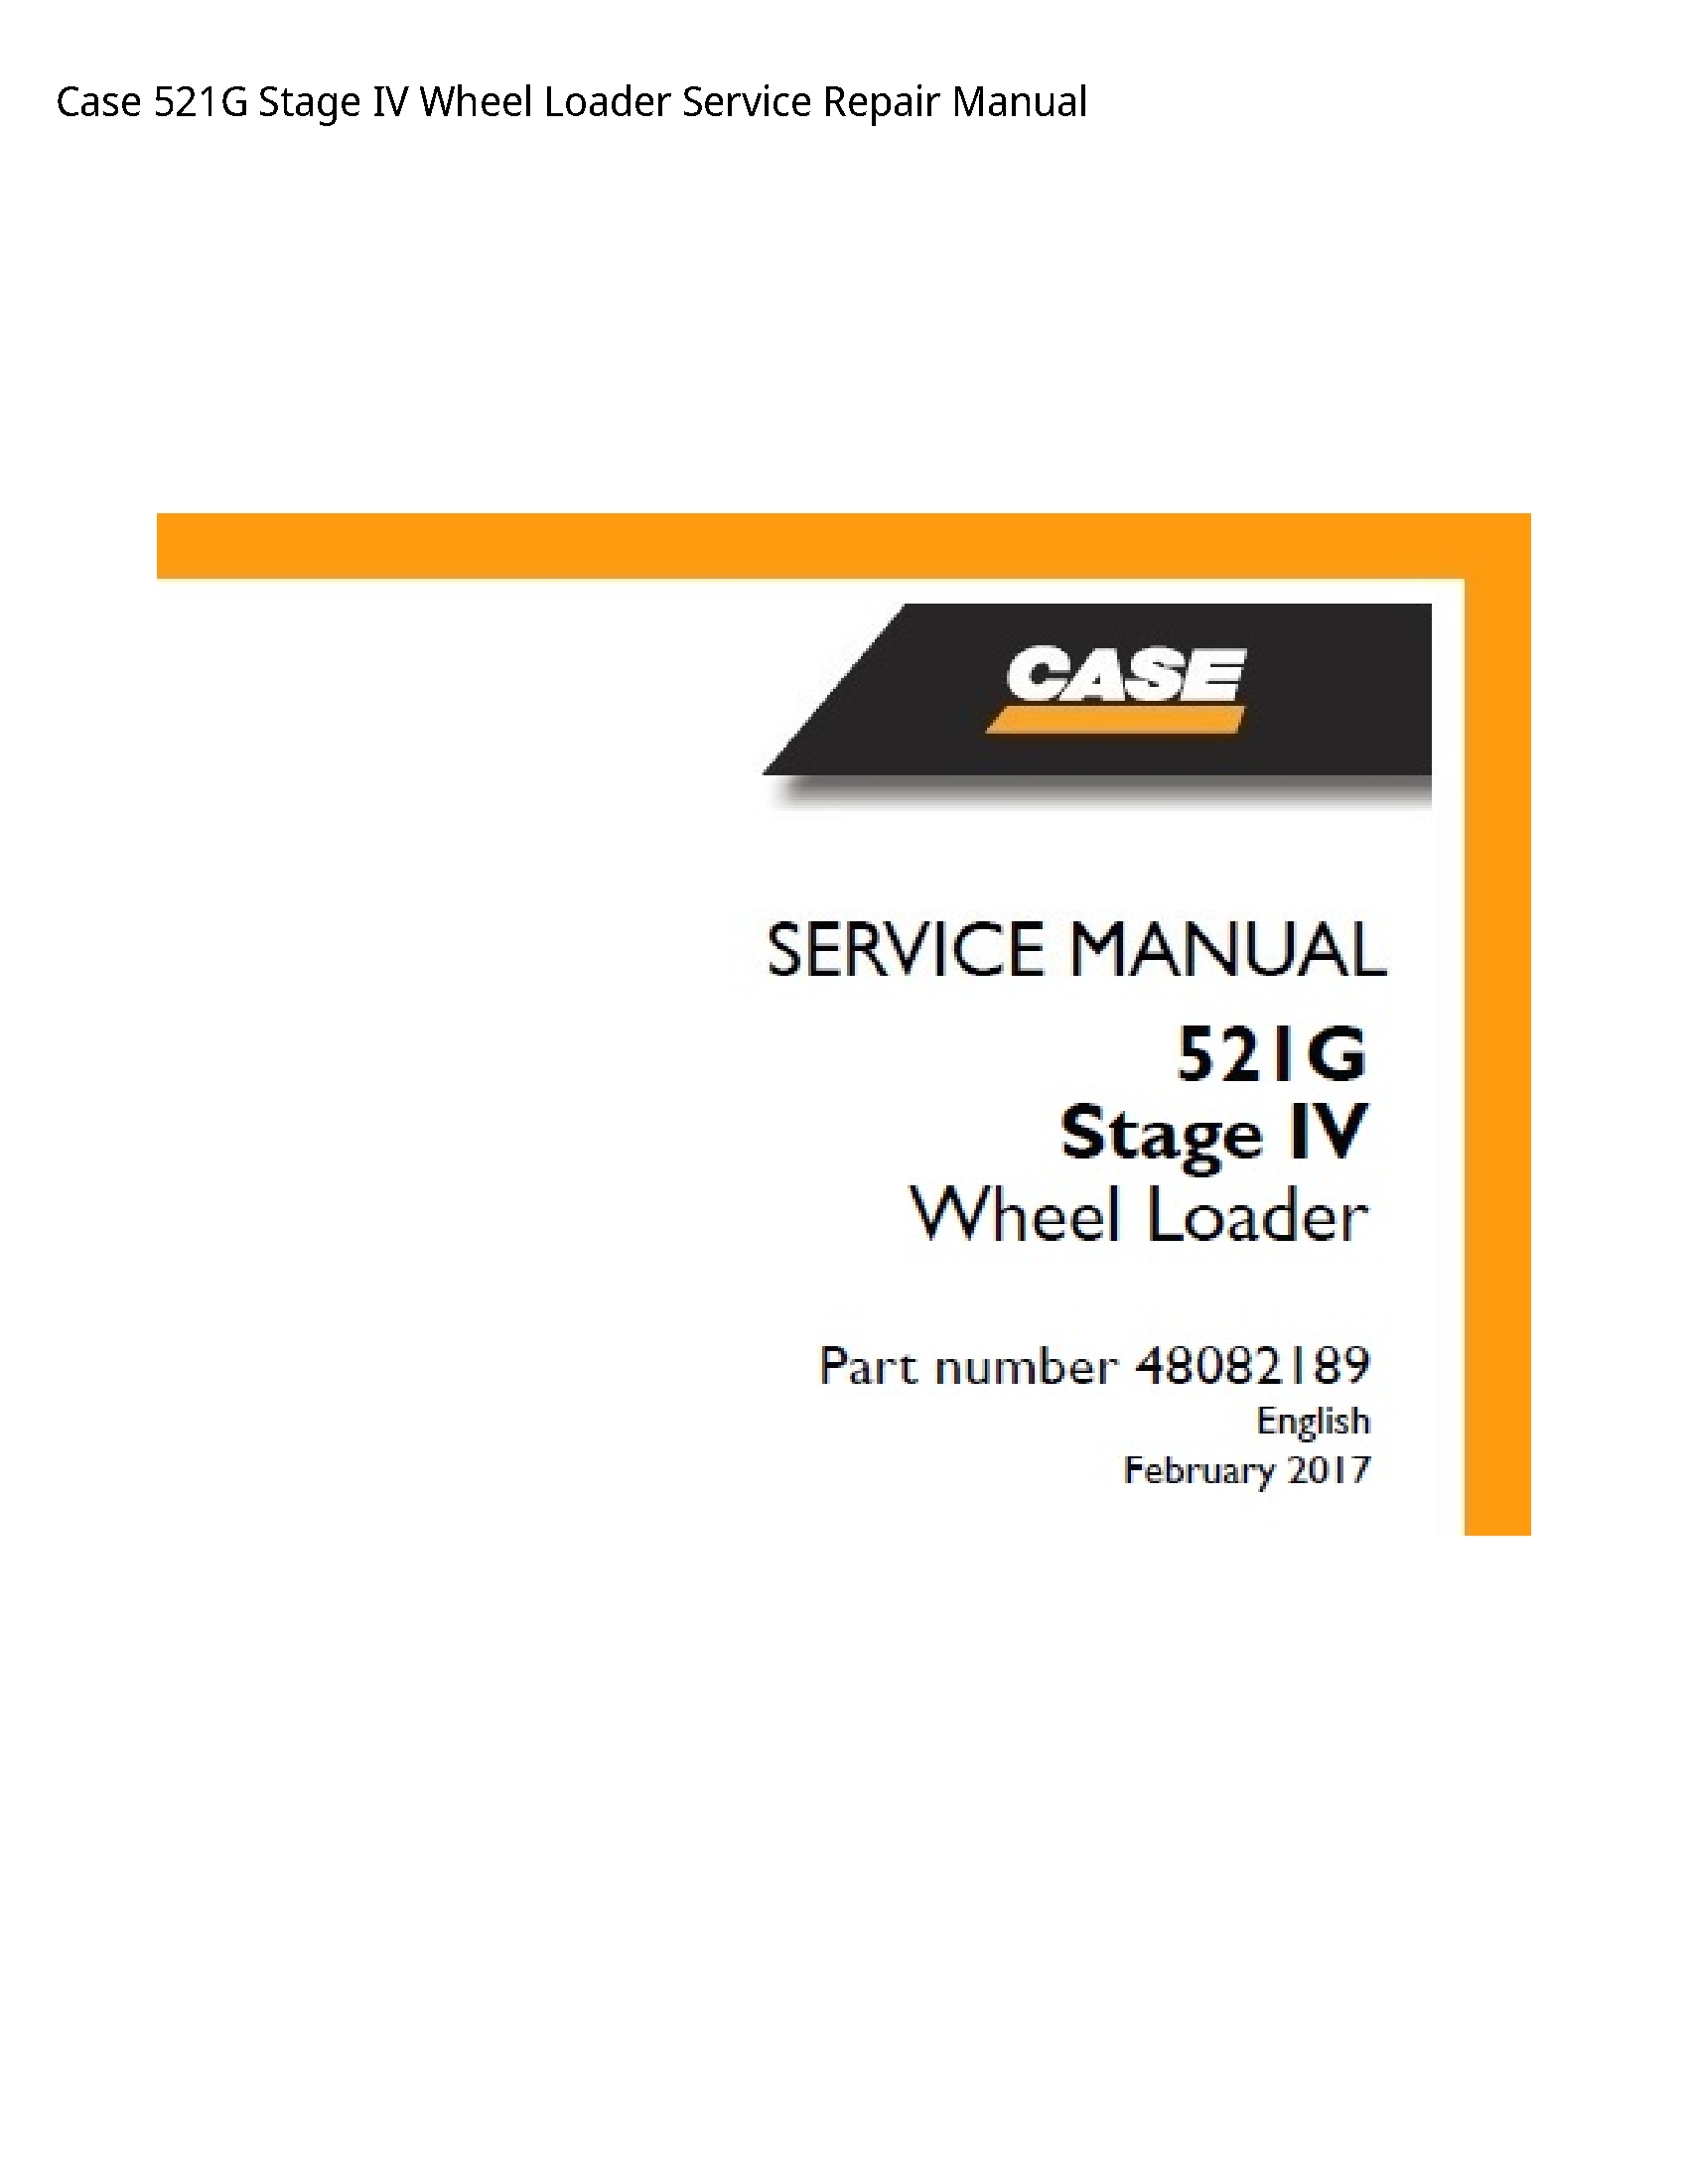 Case/Case IH 521G Stage IV Wheel Loader manual